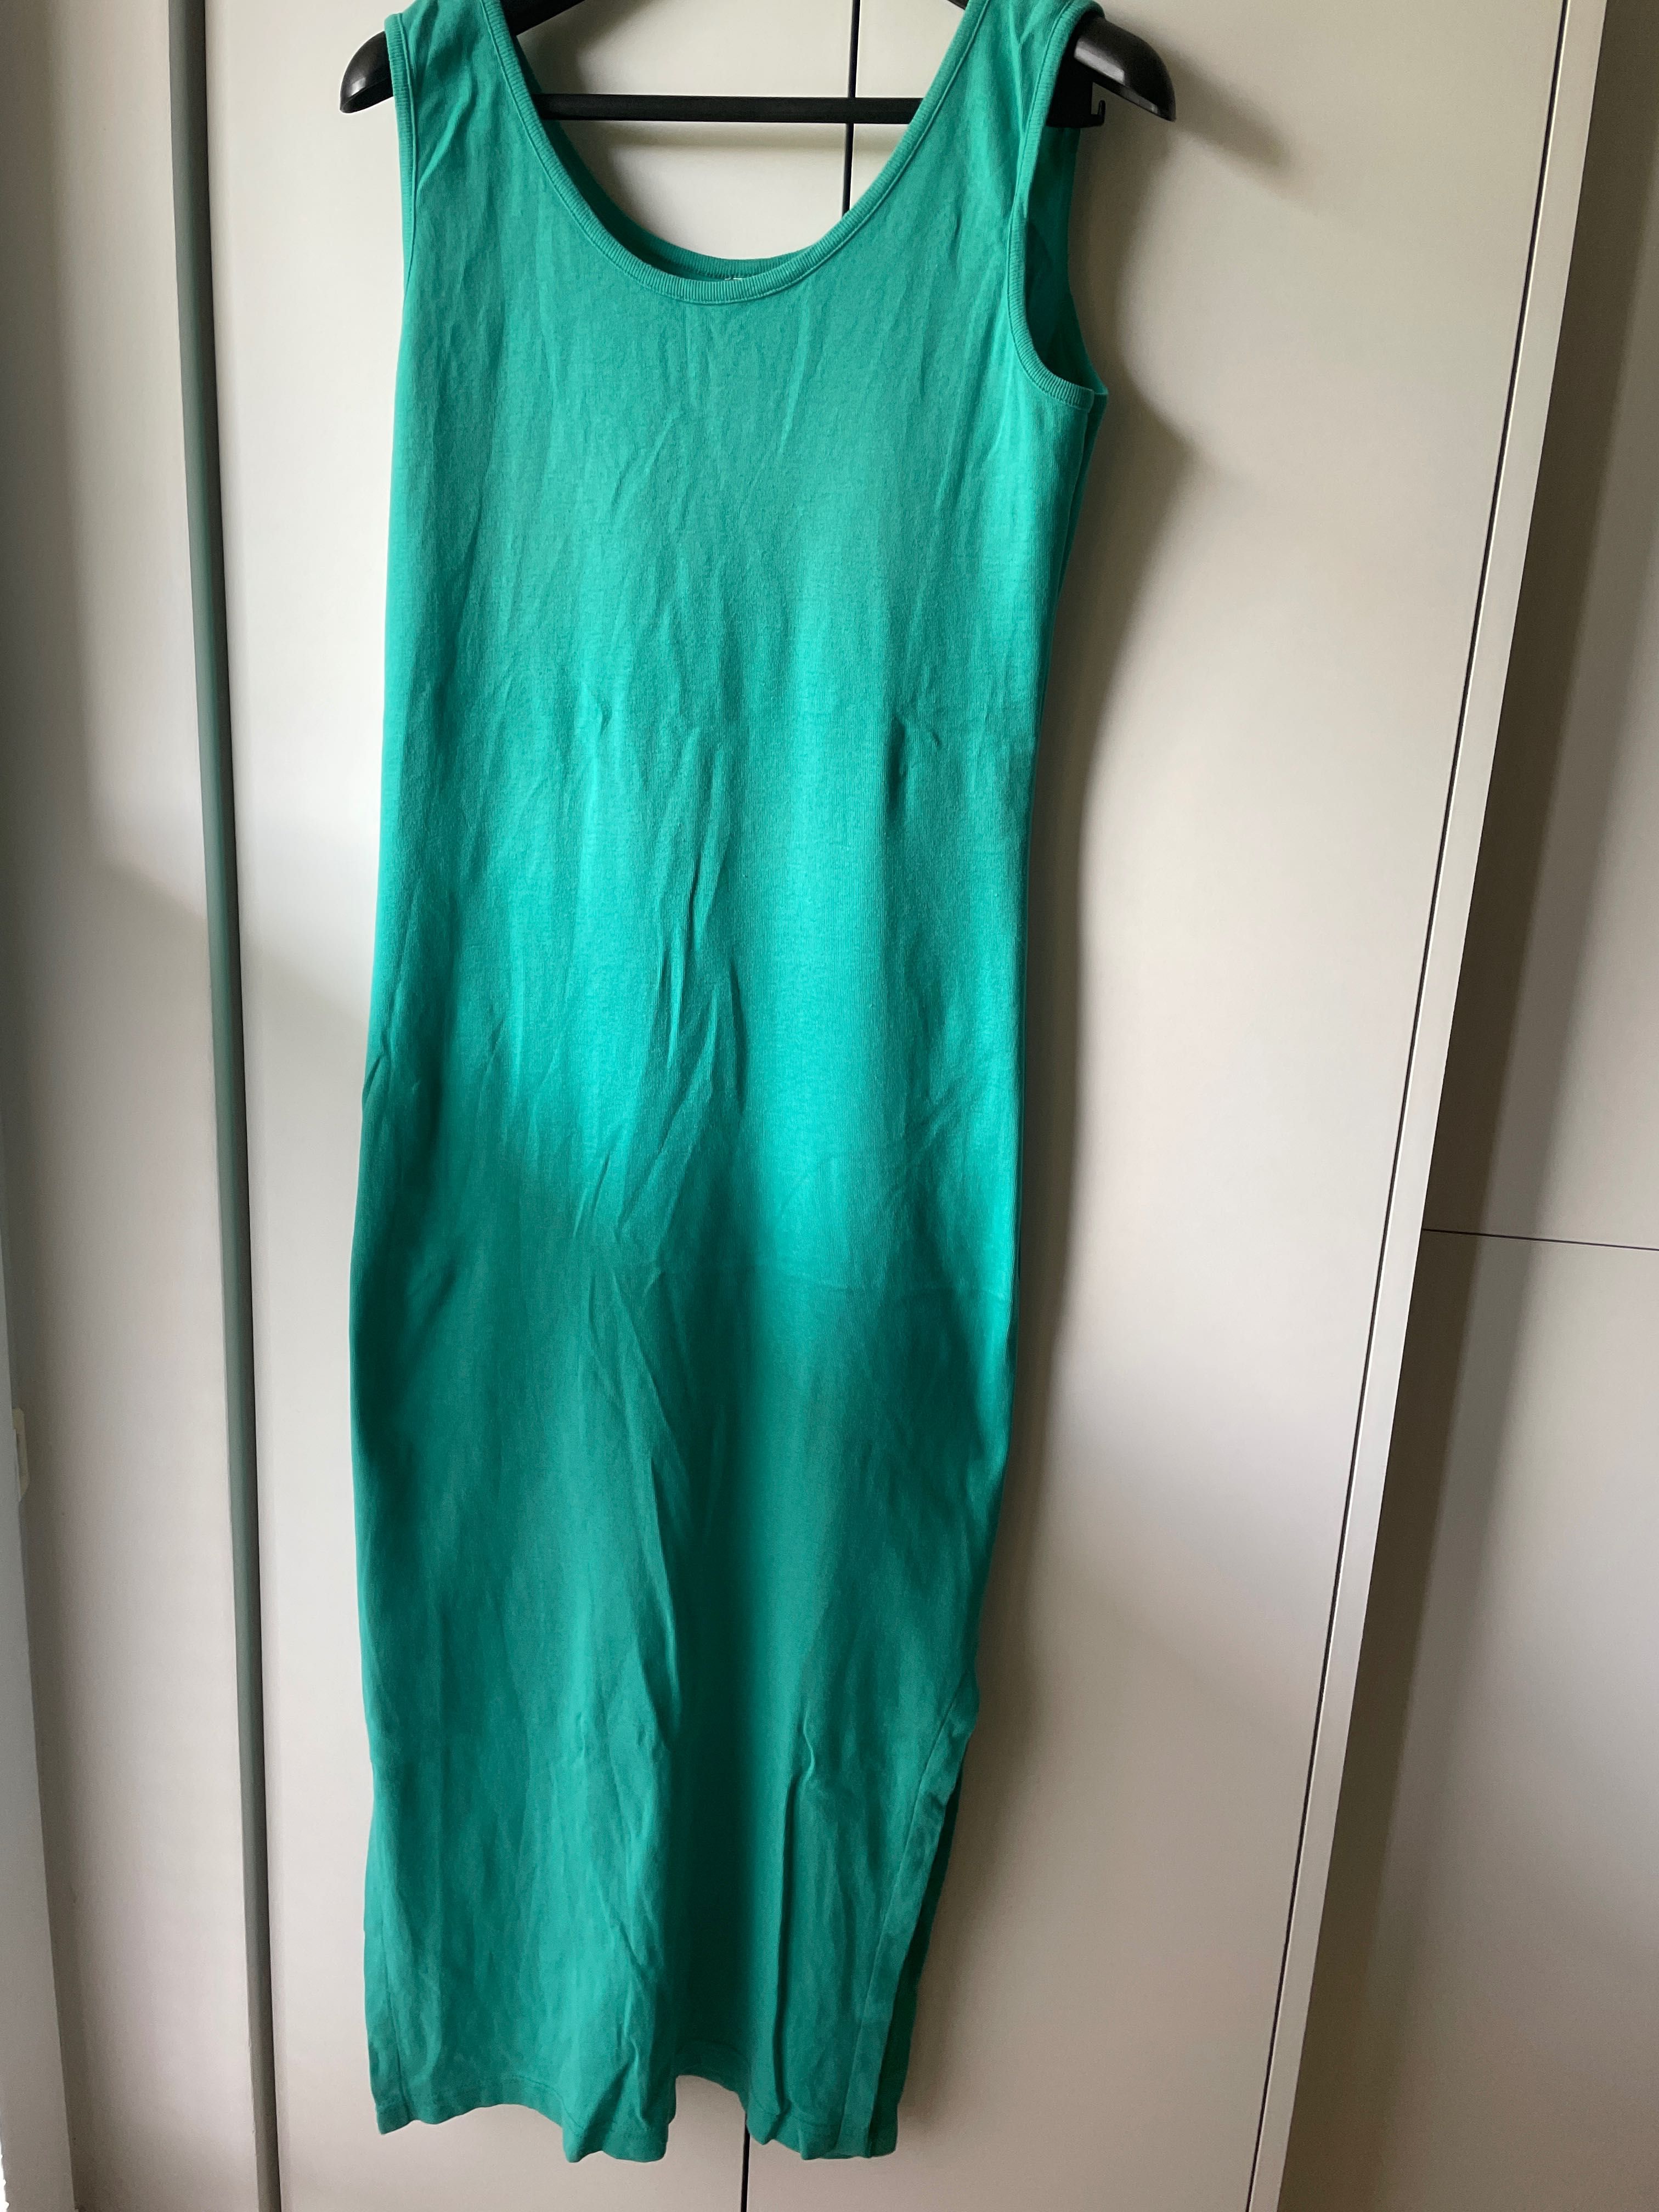 sukienka zielony/seledyn, bawełna/dresowa, wdzianko, rozmiar S